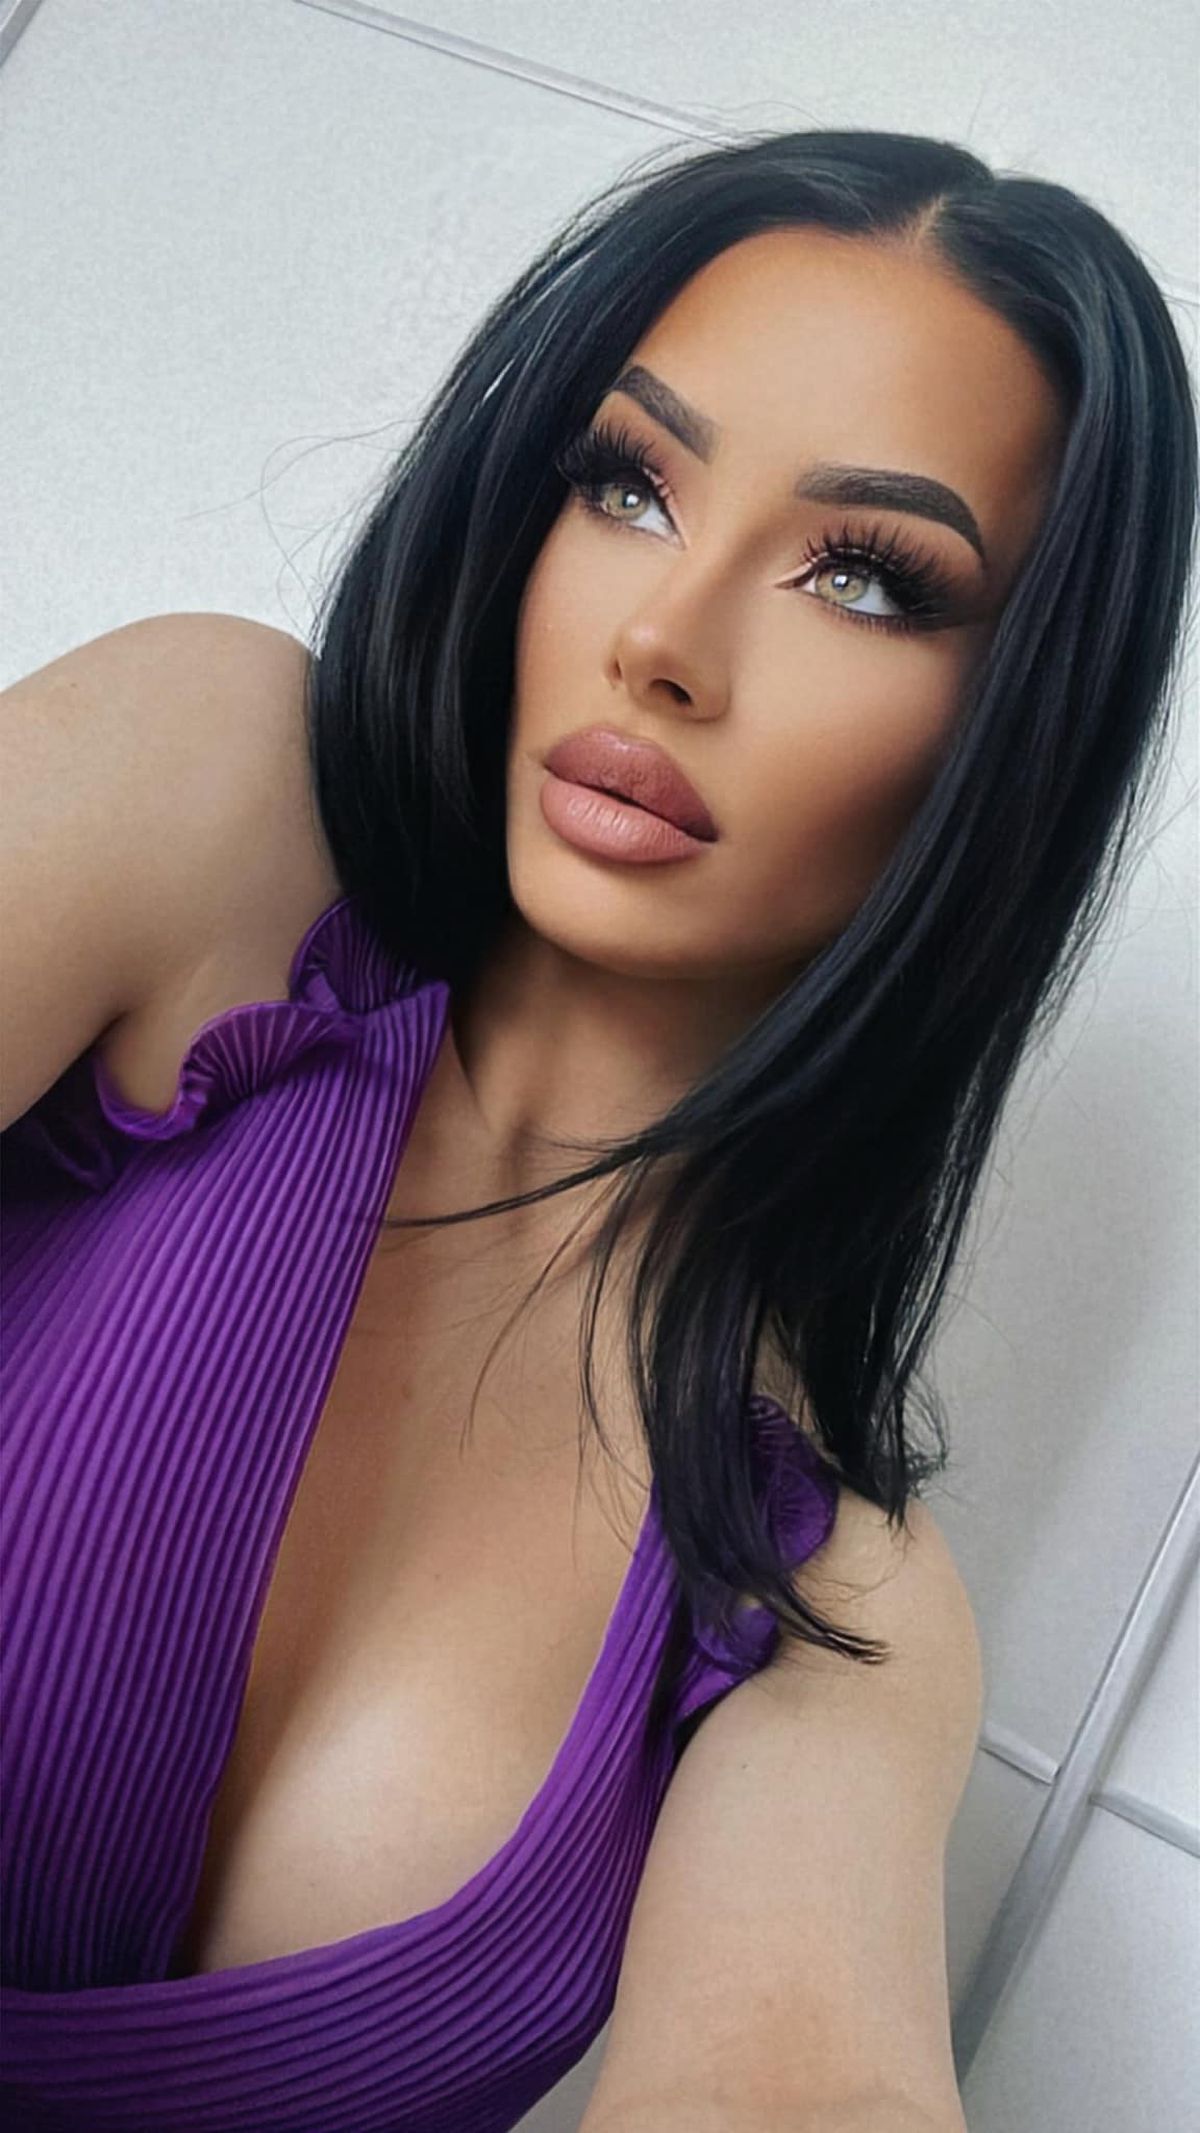 Sora sexy a lui Alexandru Mitriță! Cu ce se ocupă în Dubai, acolo unde călătorește frecvent